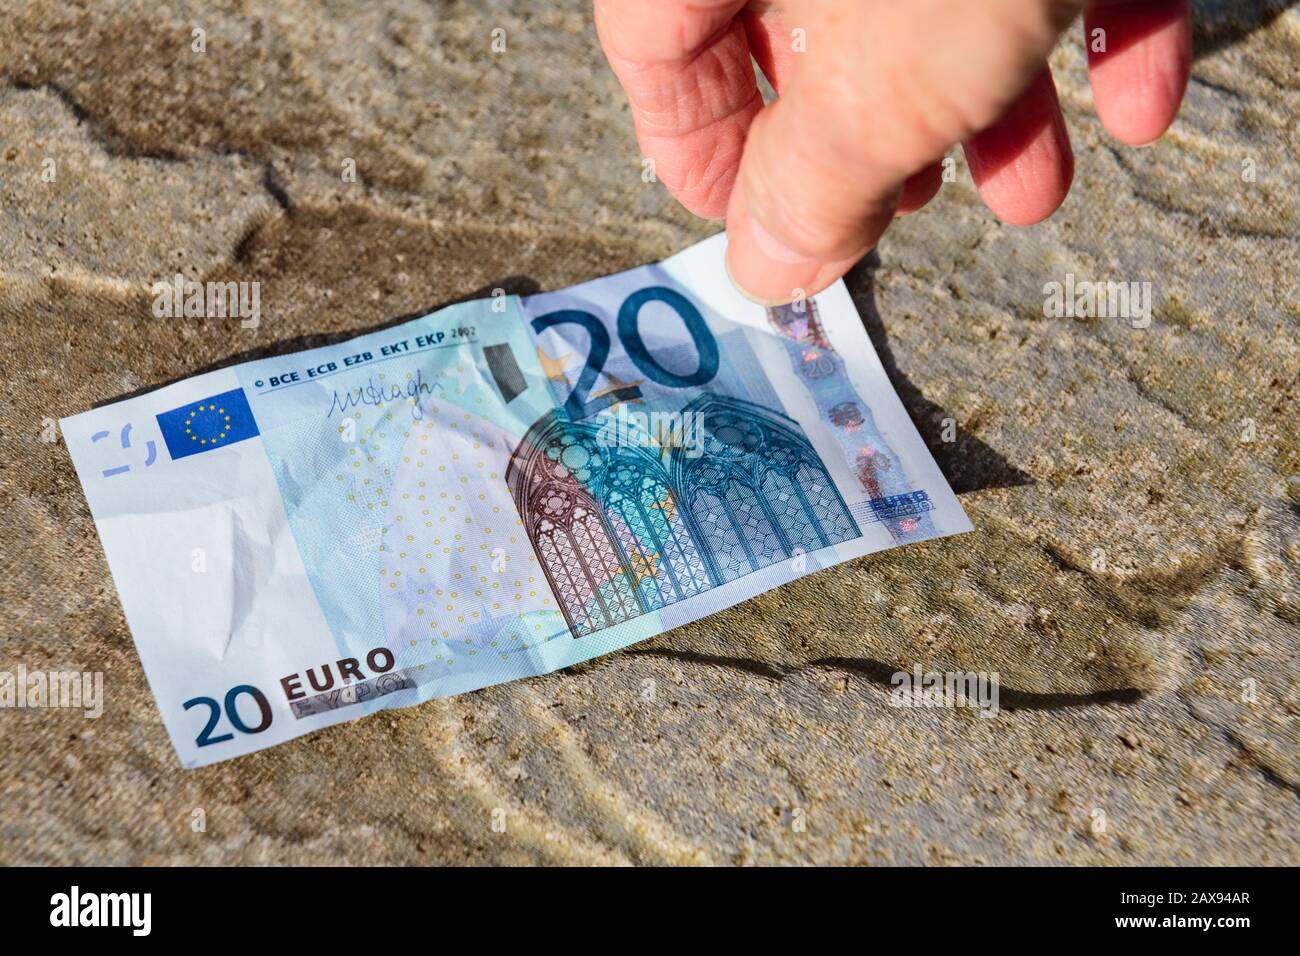 Ein glücklicher Mensch findet Geld auf dem Boden, eine Hand reicht nach unten, um eine 20-Euro-Note vom Boden zu holen. Europa Stockfoto